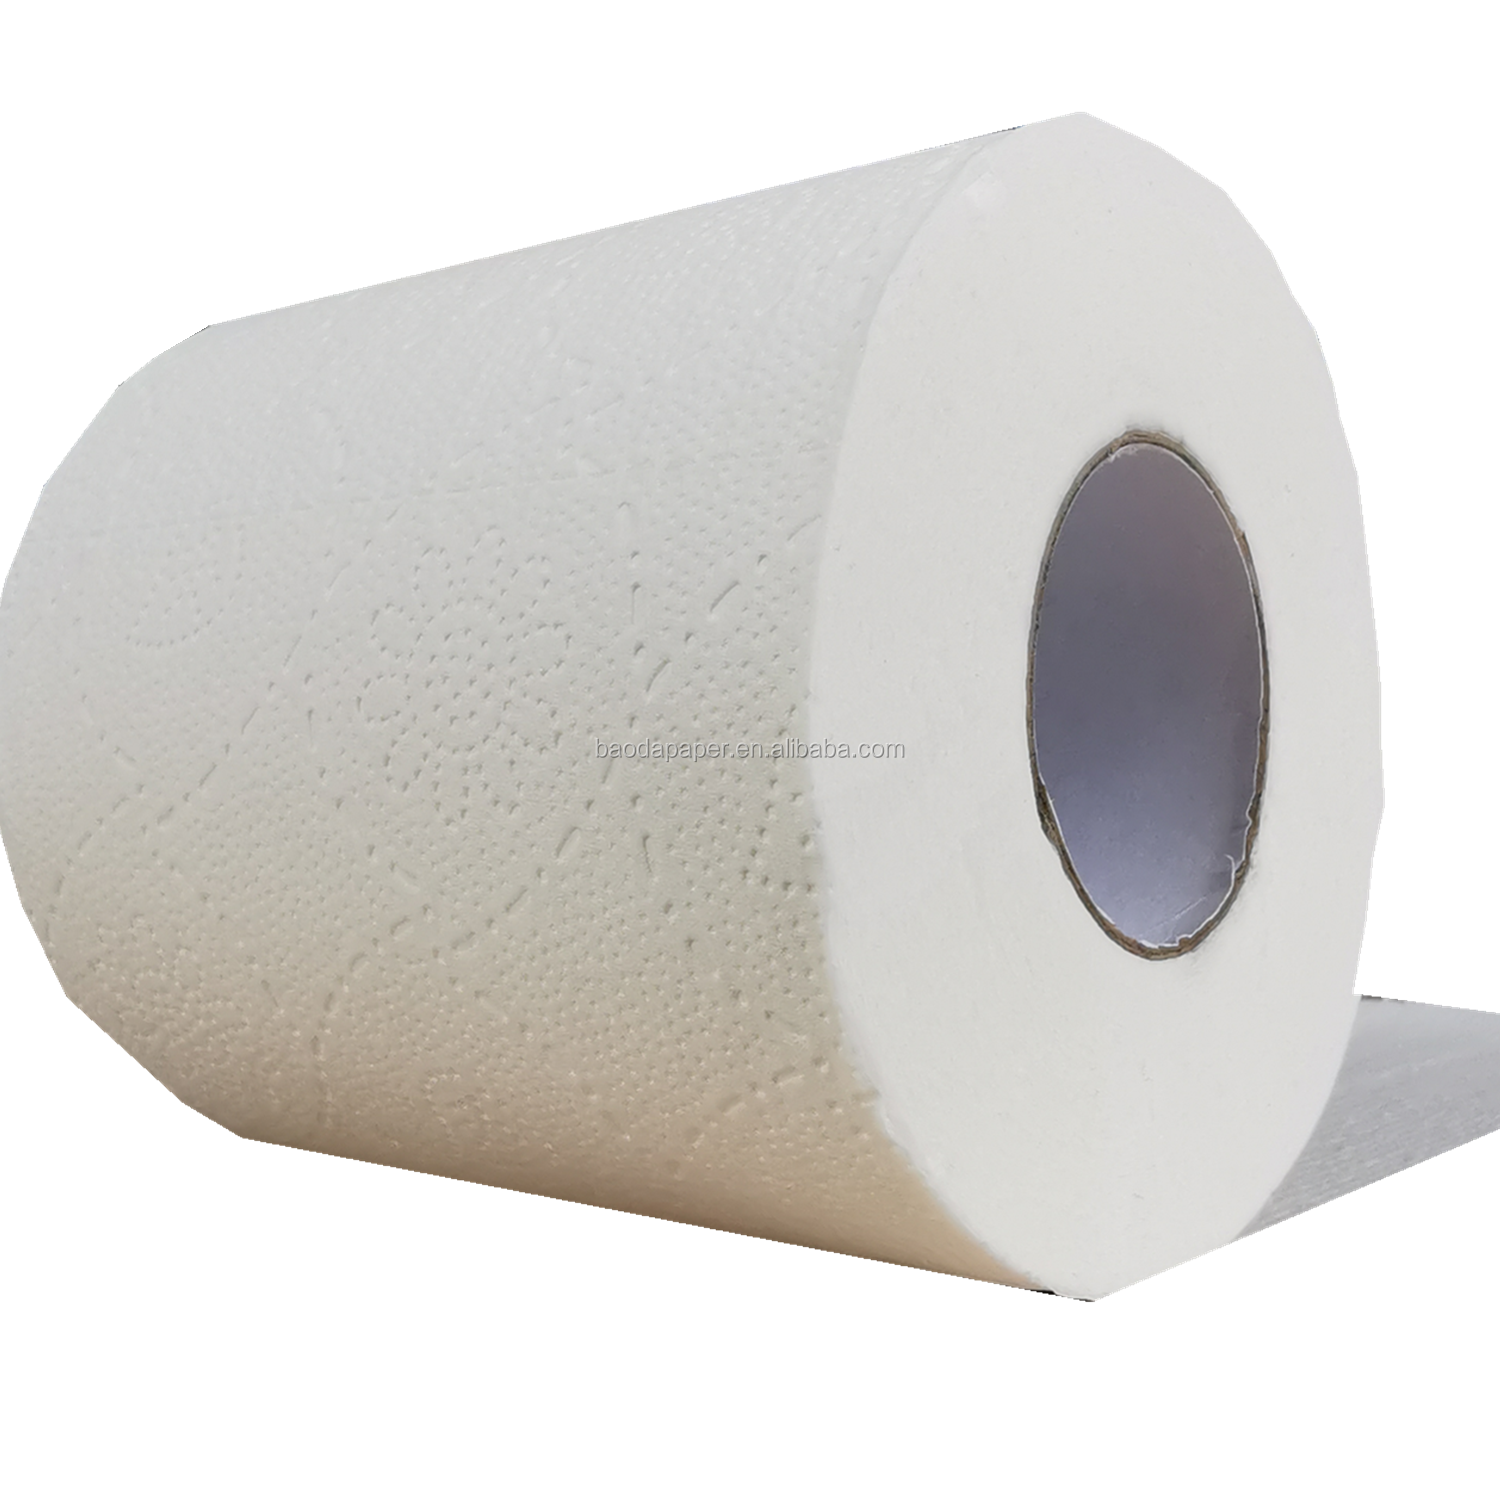 jumbo roll toilet tissue